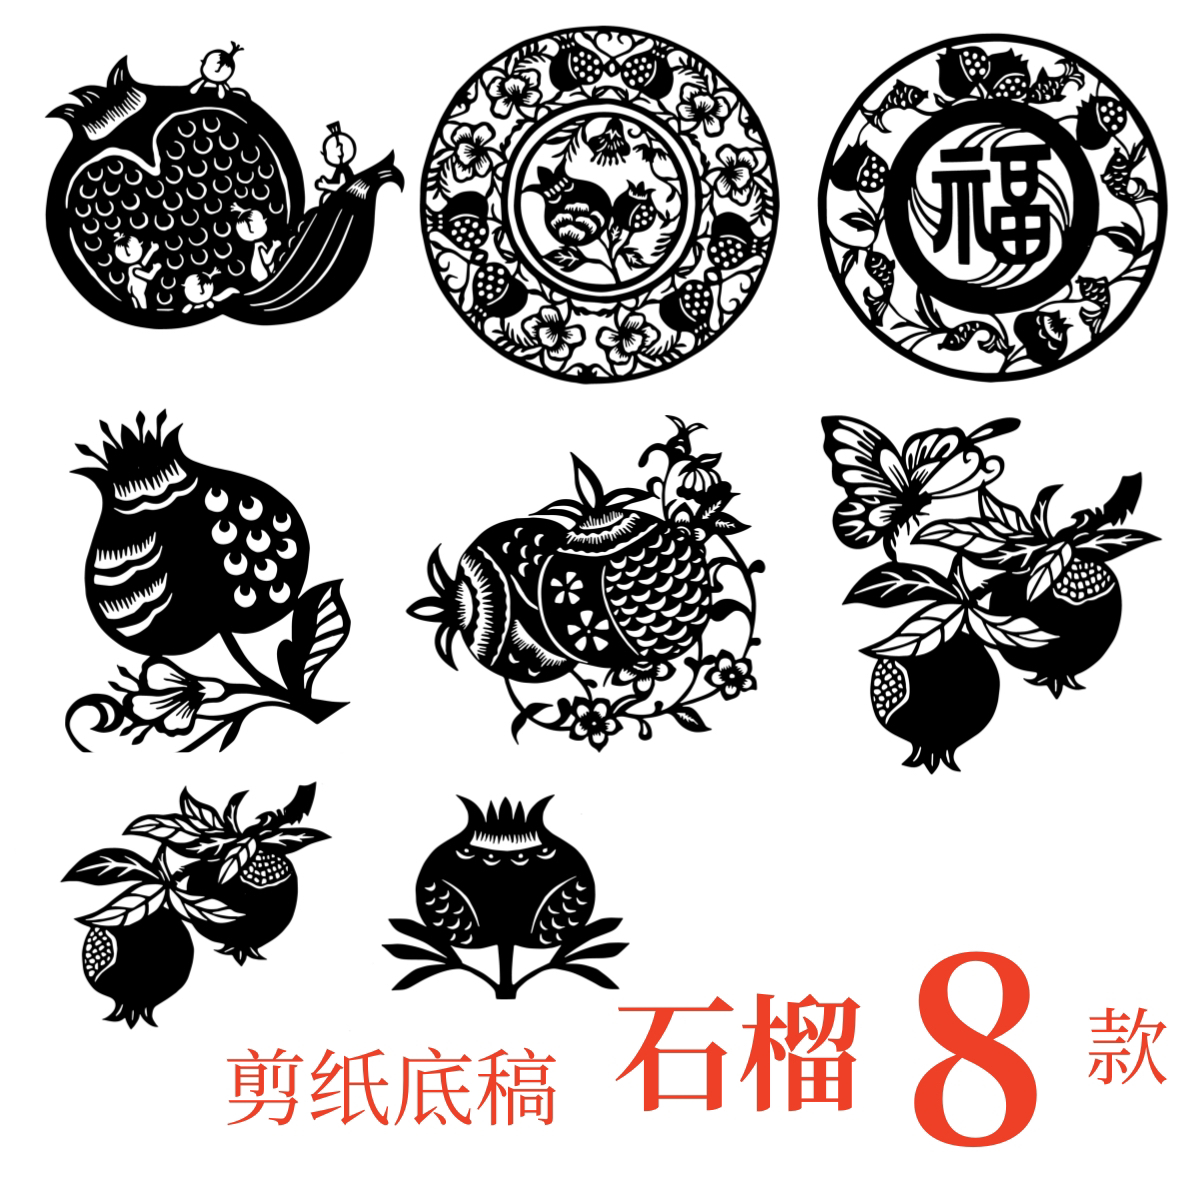 石榴花植物窗花剪纸刻底稿电子版中国风传统文化素材图案籽籽同心